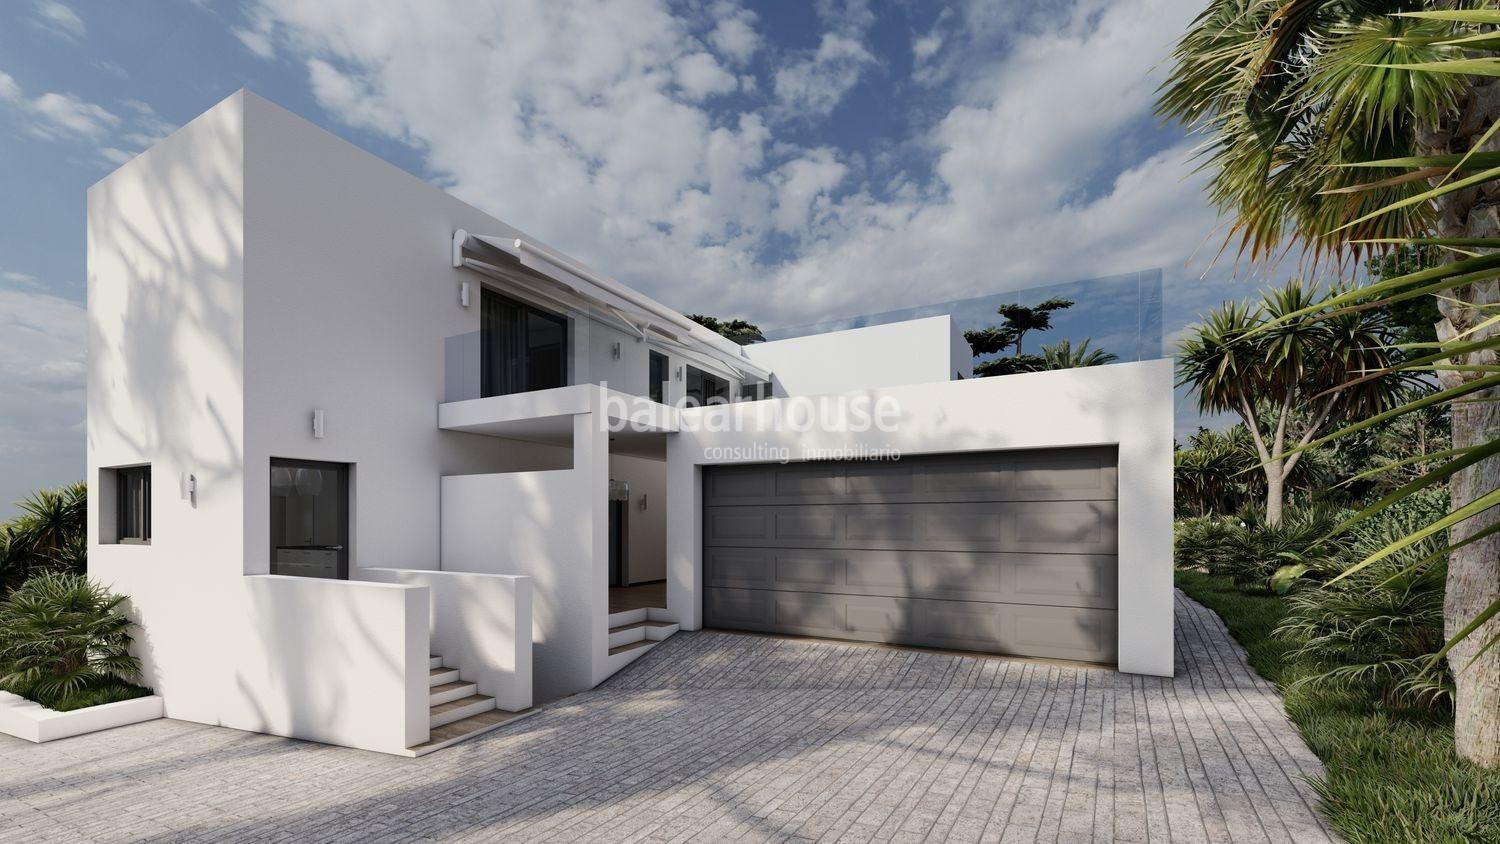 Außergewöhnliches Design-Wohnprojekt mit wunderschönem Meerblick in Santa Ponsa